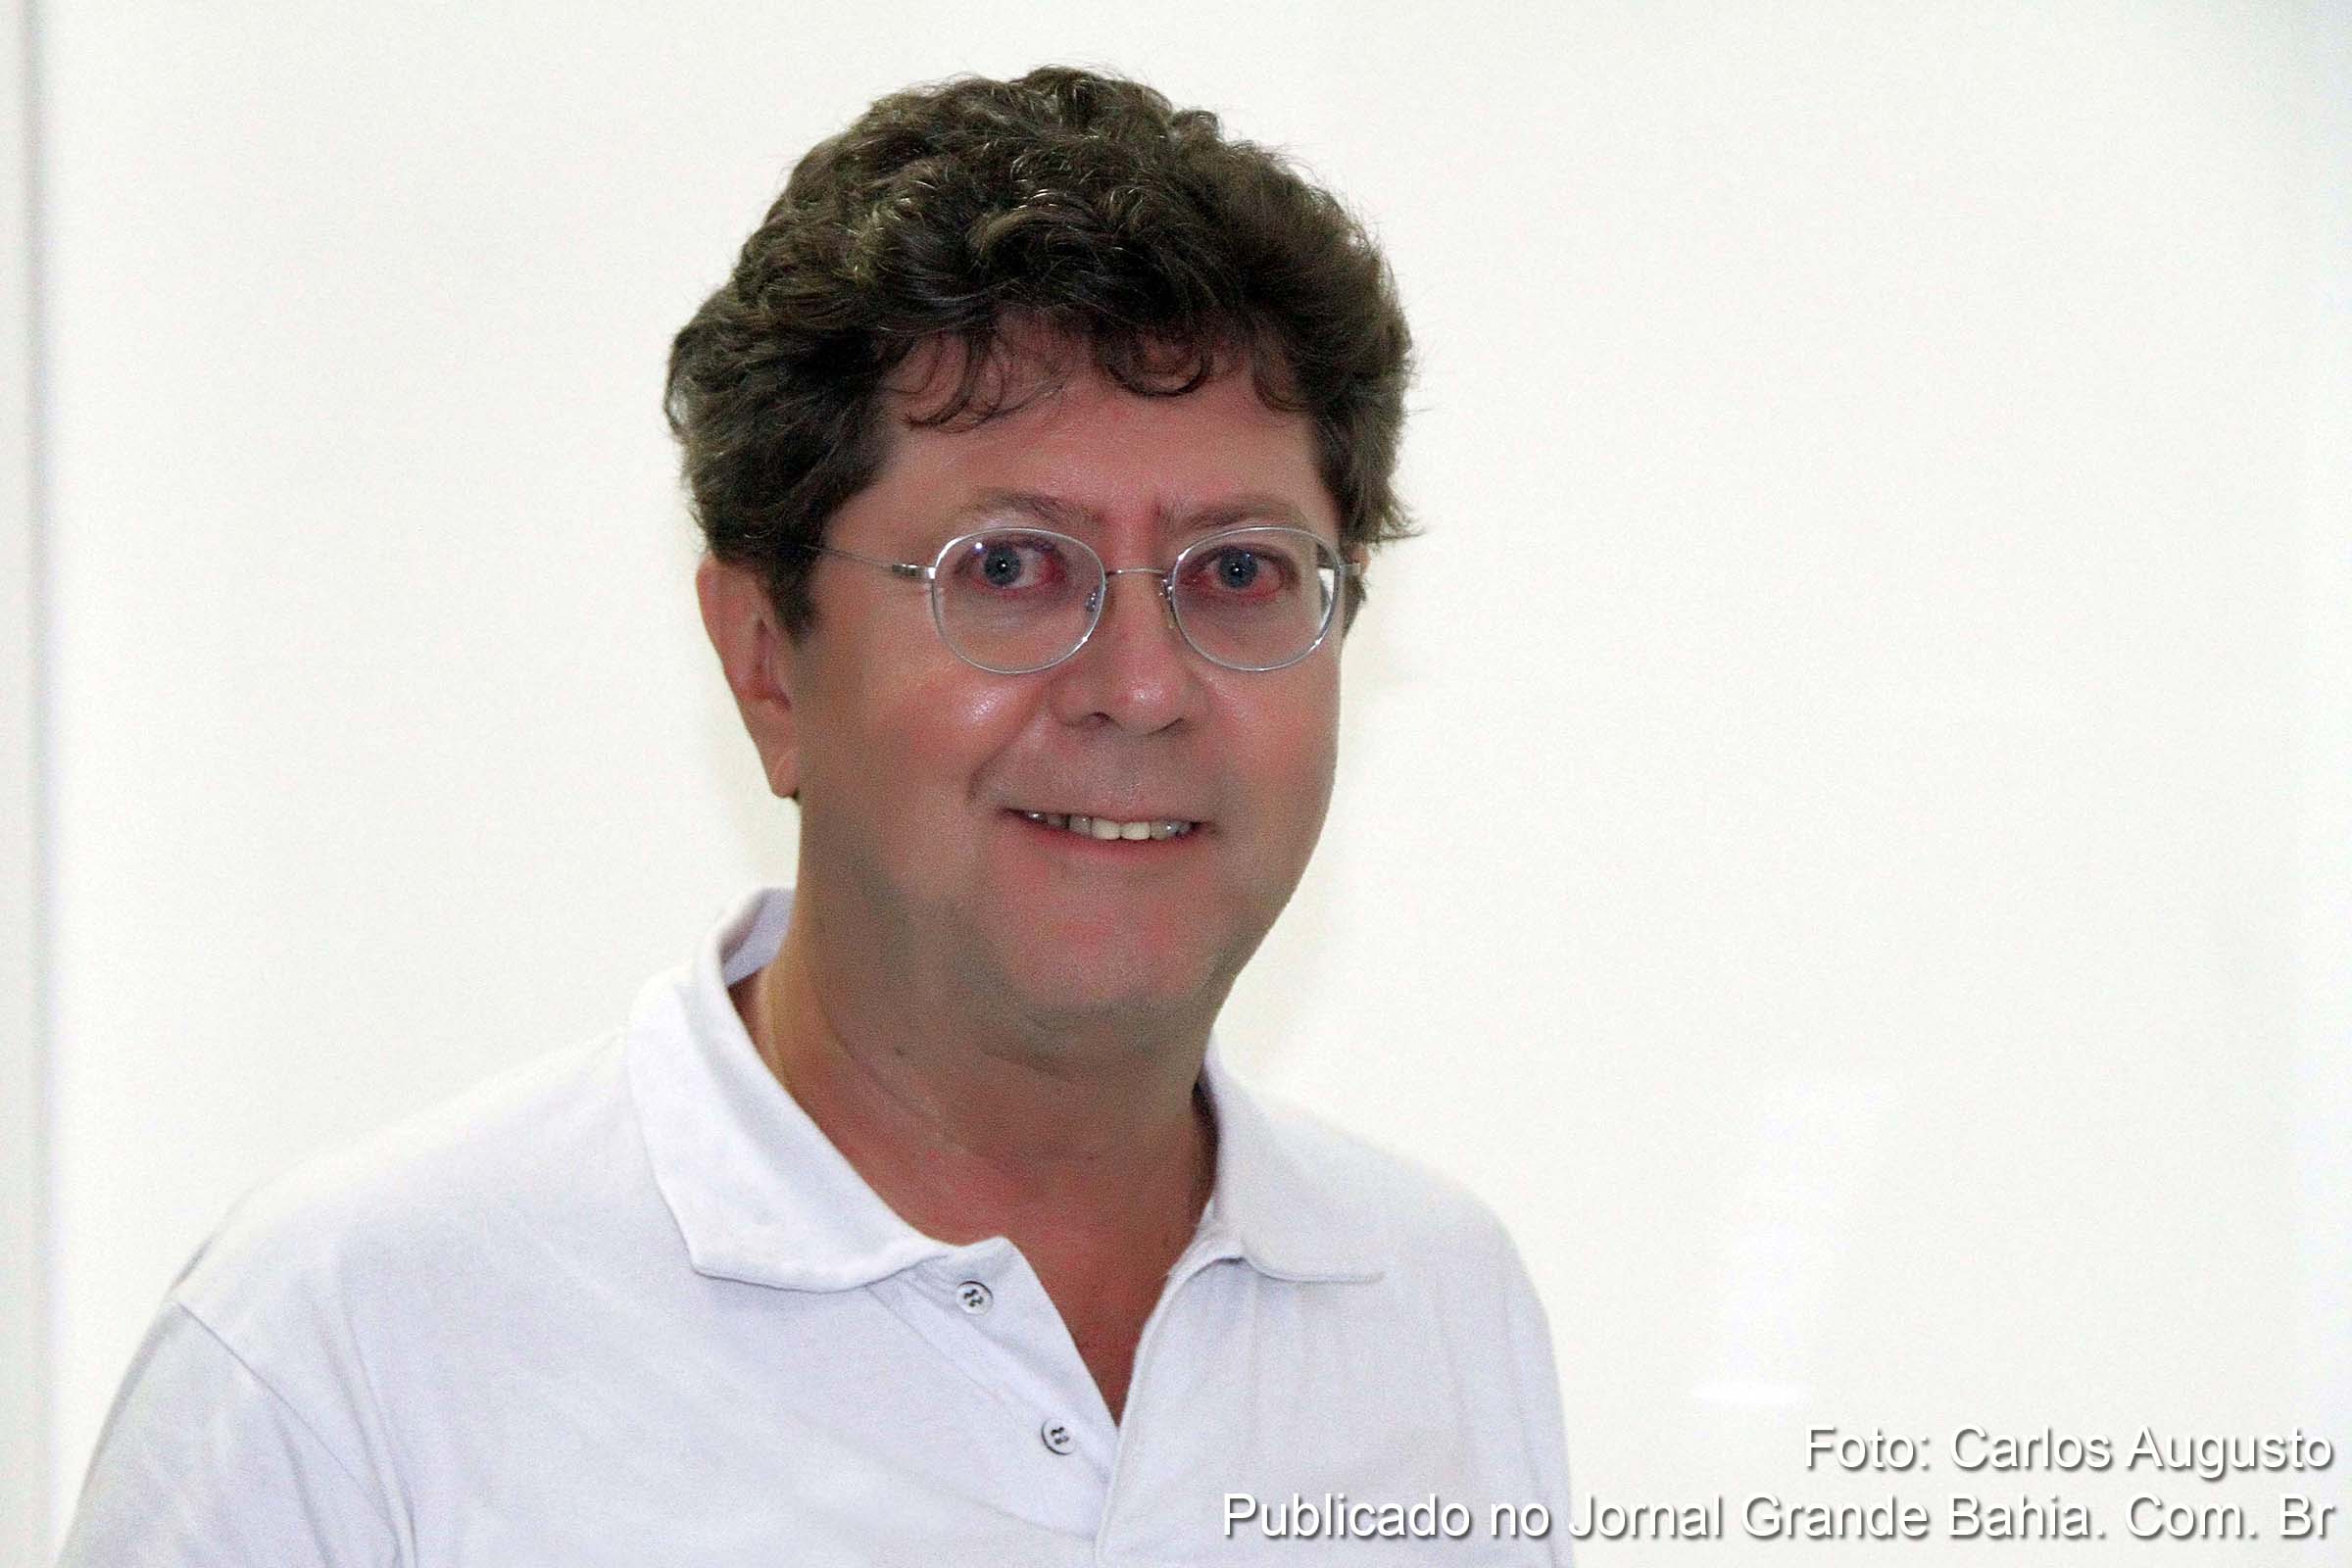 Baiano de Salvador, Juarez Duarte Bomfim é sociólogo e mestre em Administração pela Universidade Federal da Bahia (UFBA), doutor em Geografia Humana pela Universidade de Salamanca, Espanha; e professor da Universidade Estadual de Feira de Santana (UEFS).